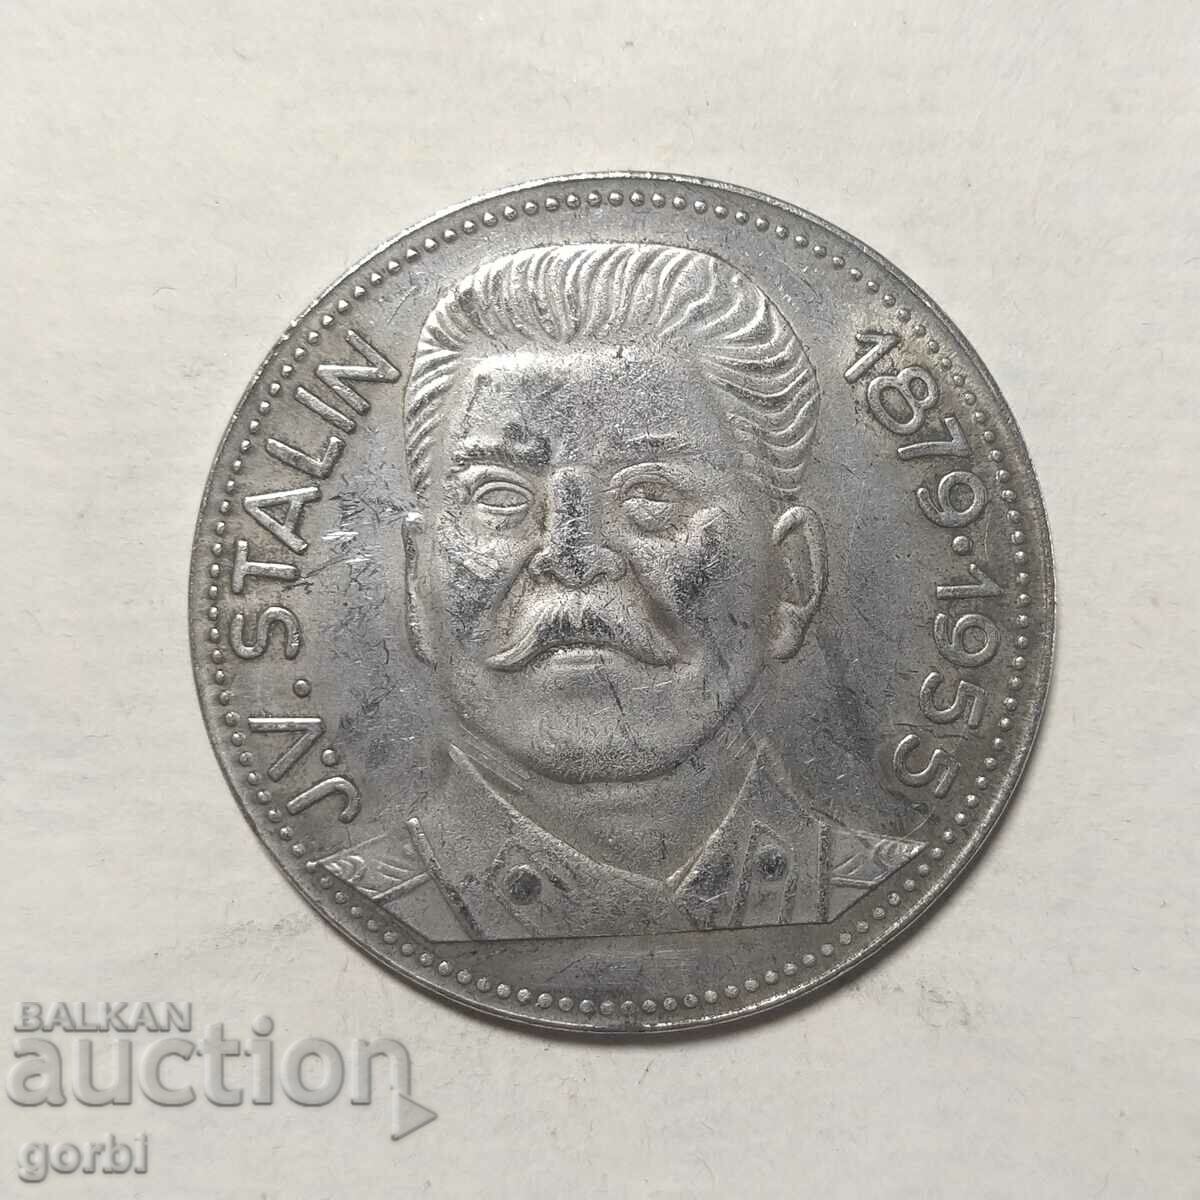 Реплика- плакет, медал, монета Сталин